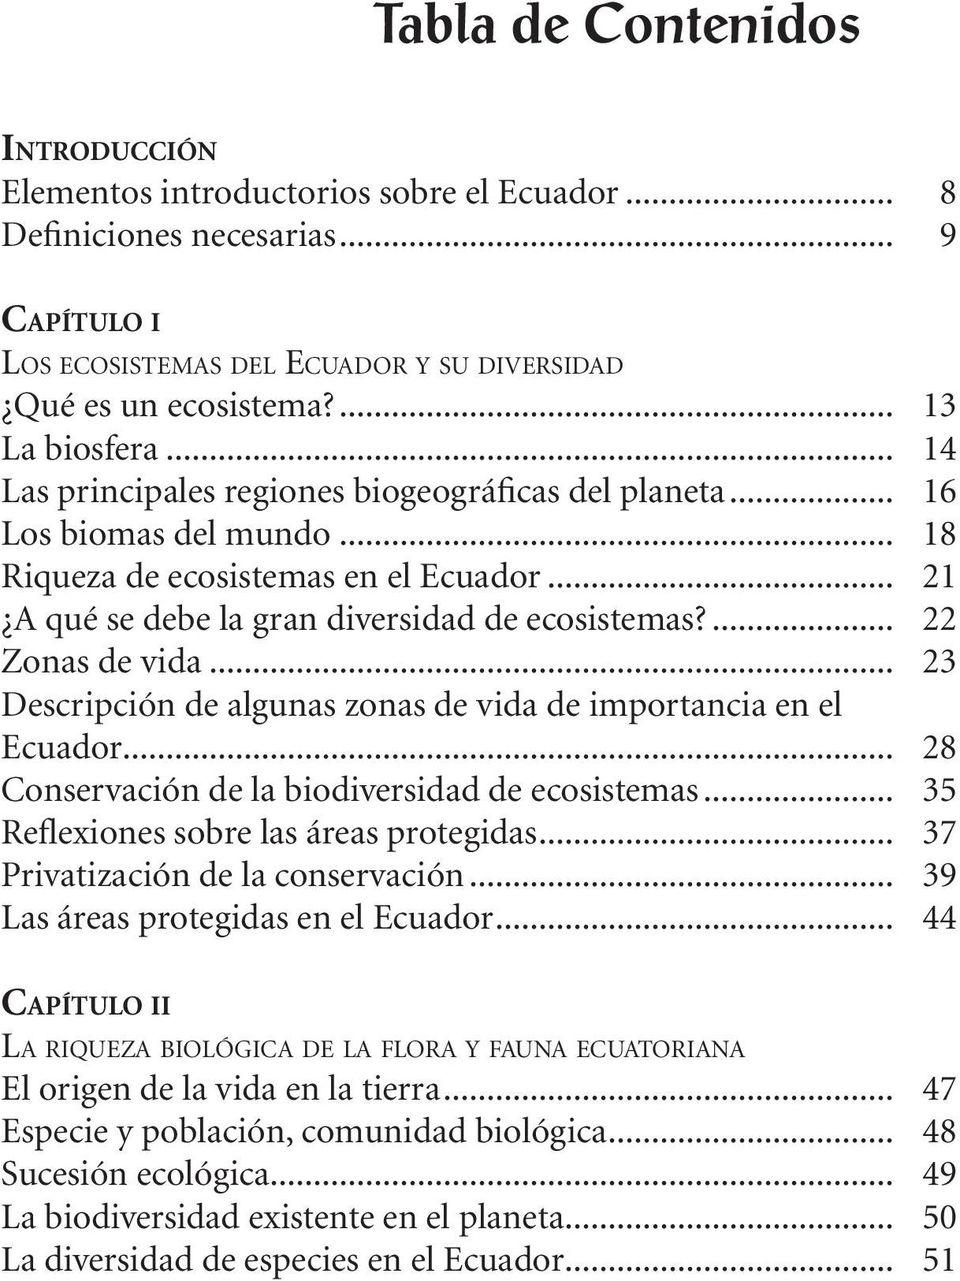 ... 22 Zonas de vida... 23 Descripción de algunas zonas de vida de importancia en el Ecuador... 28 Conservación de la biodiversidad de ecosistemas... 35 Reflexiones sobre las áreas protegidas.